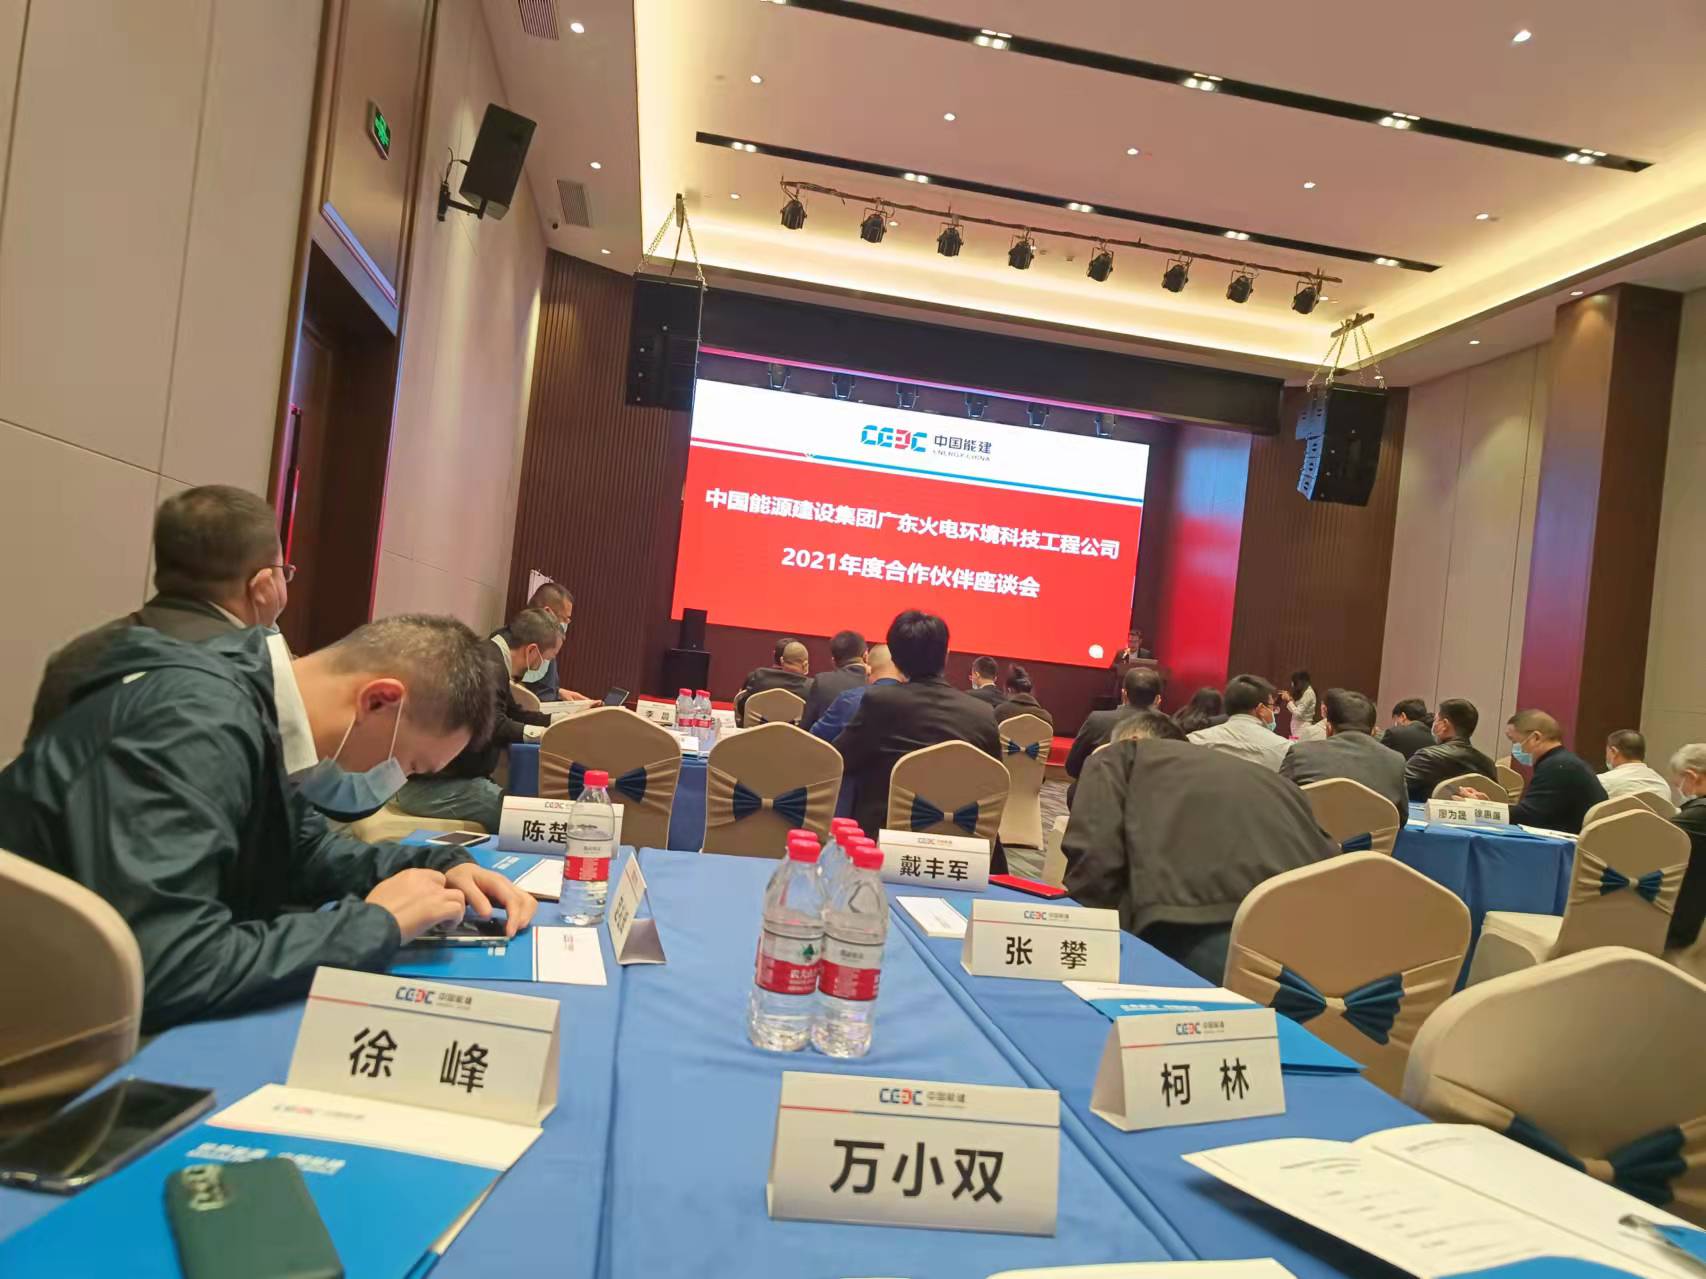 上海電站閥門廠有限公司應邀參加中能建廣東火電環境科技工程公司合作伙伴座談會。